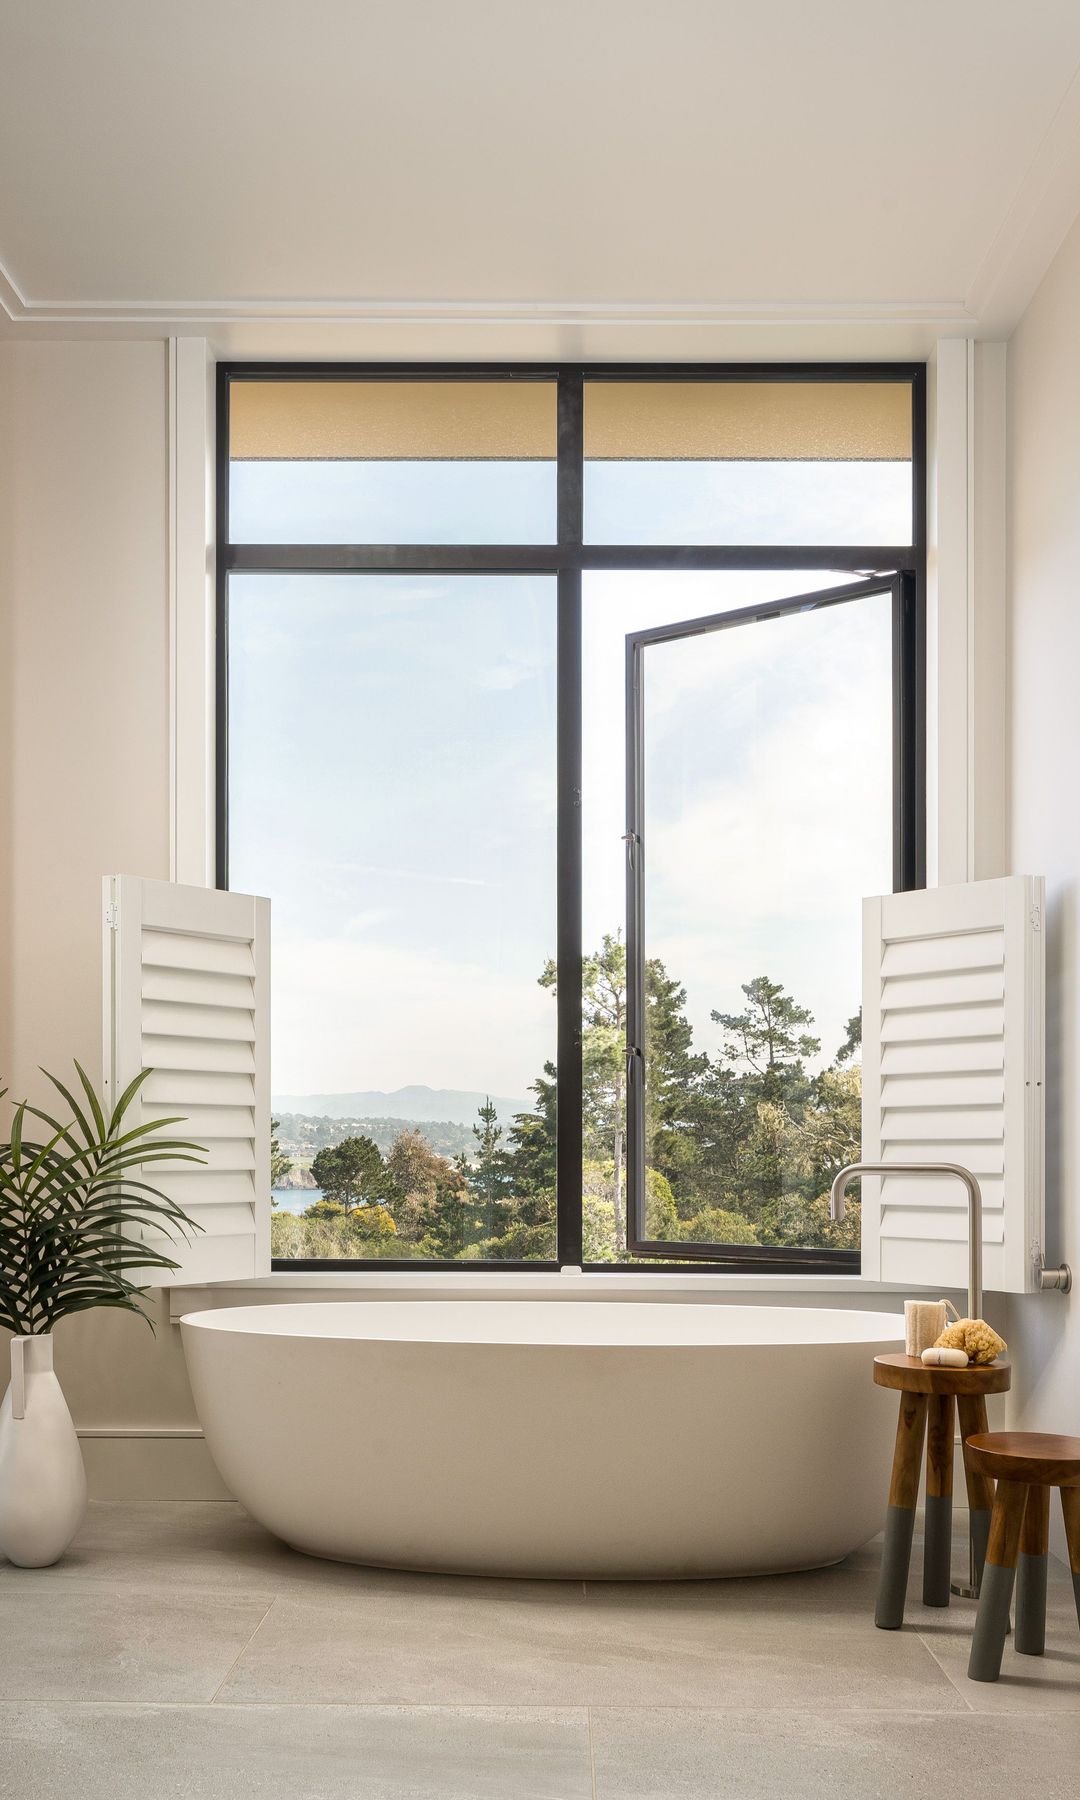 Baño con bañera exenta delante de la ventana